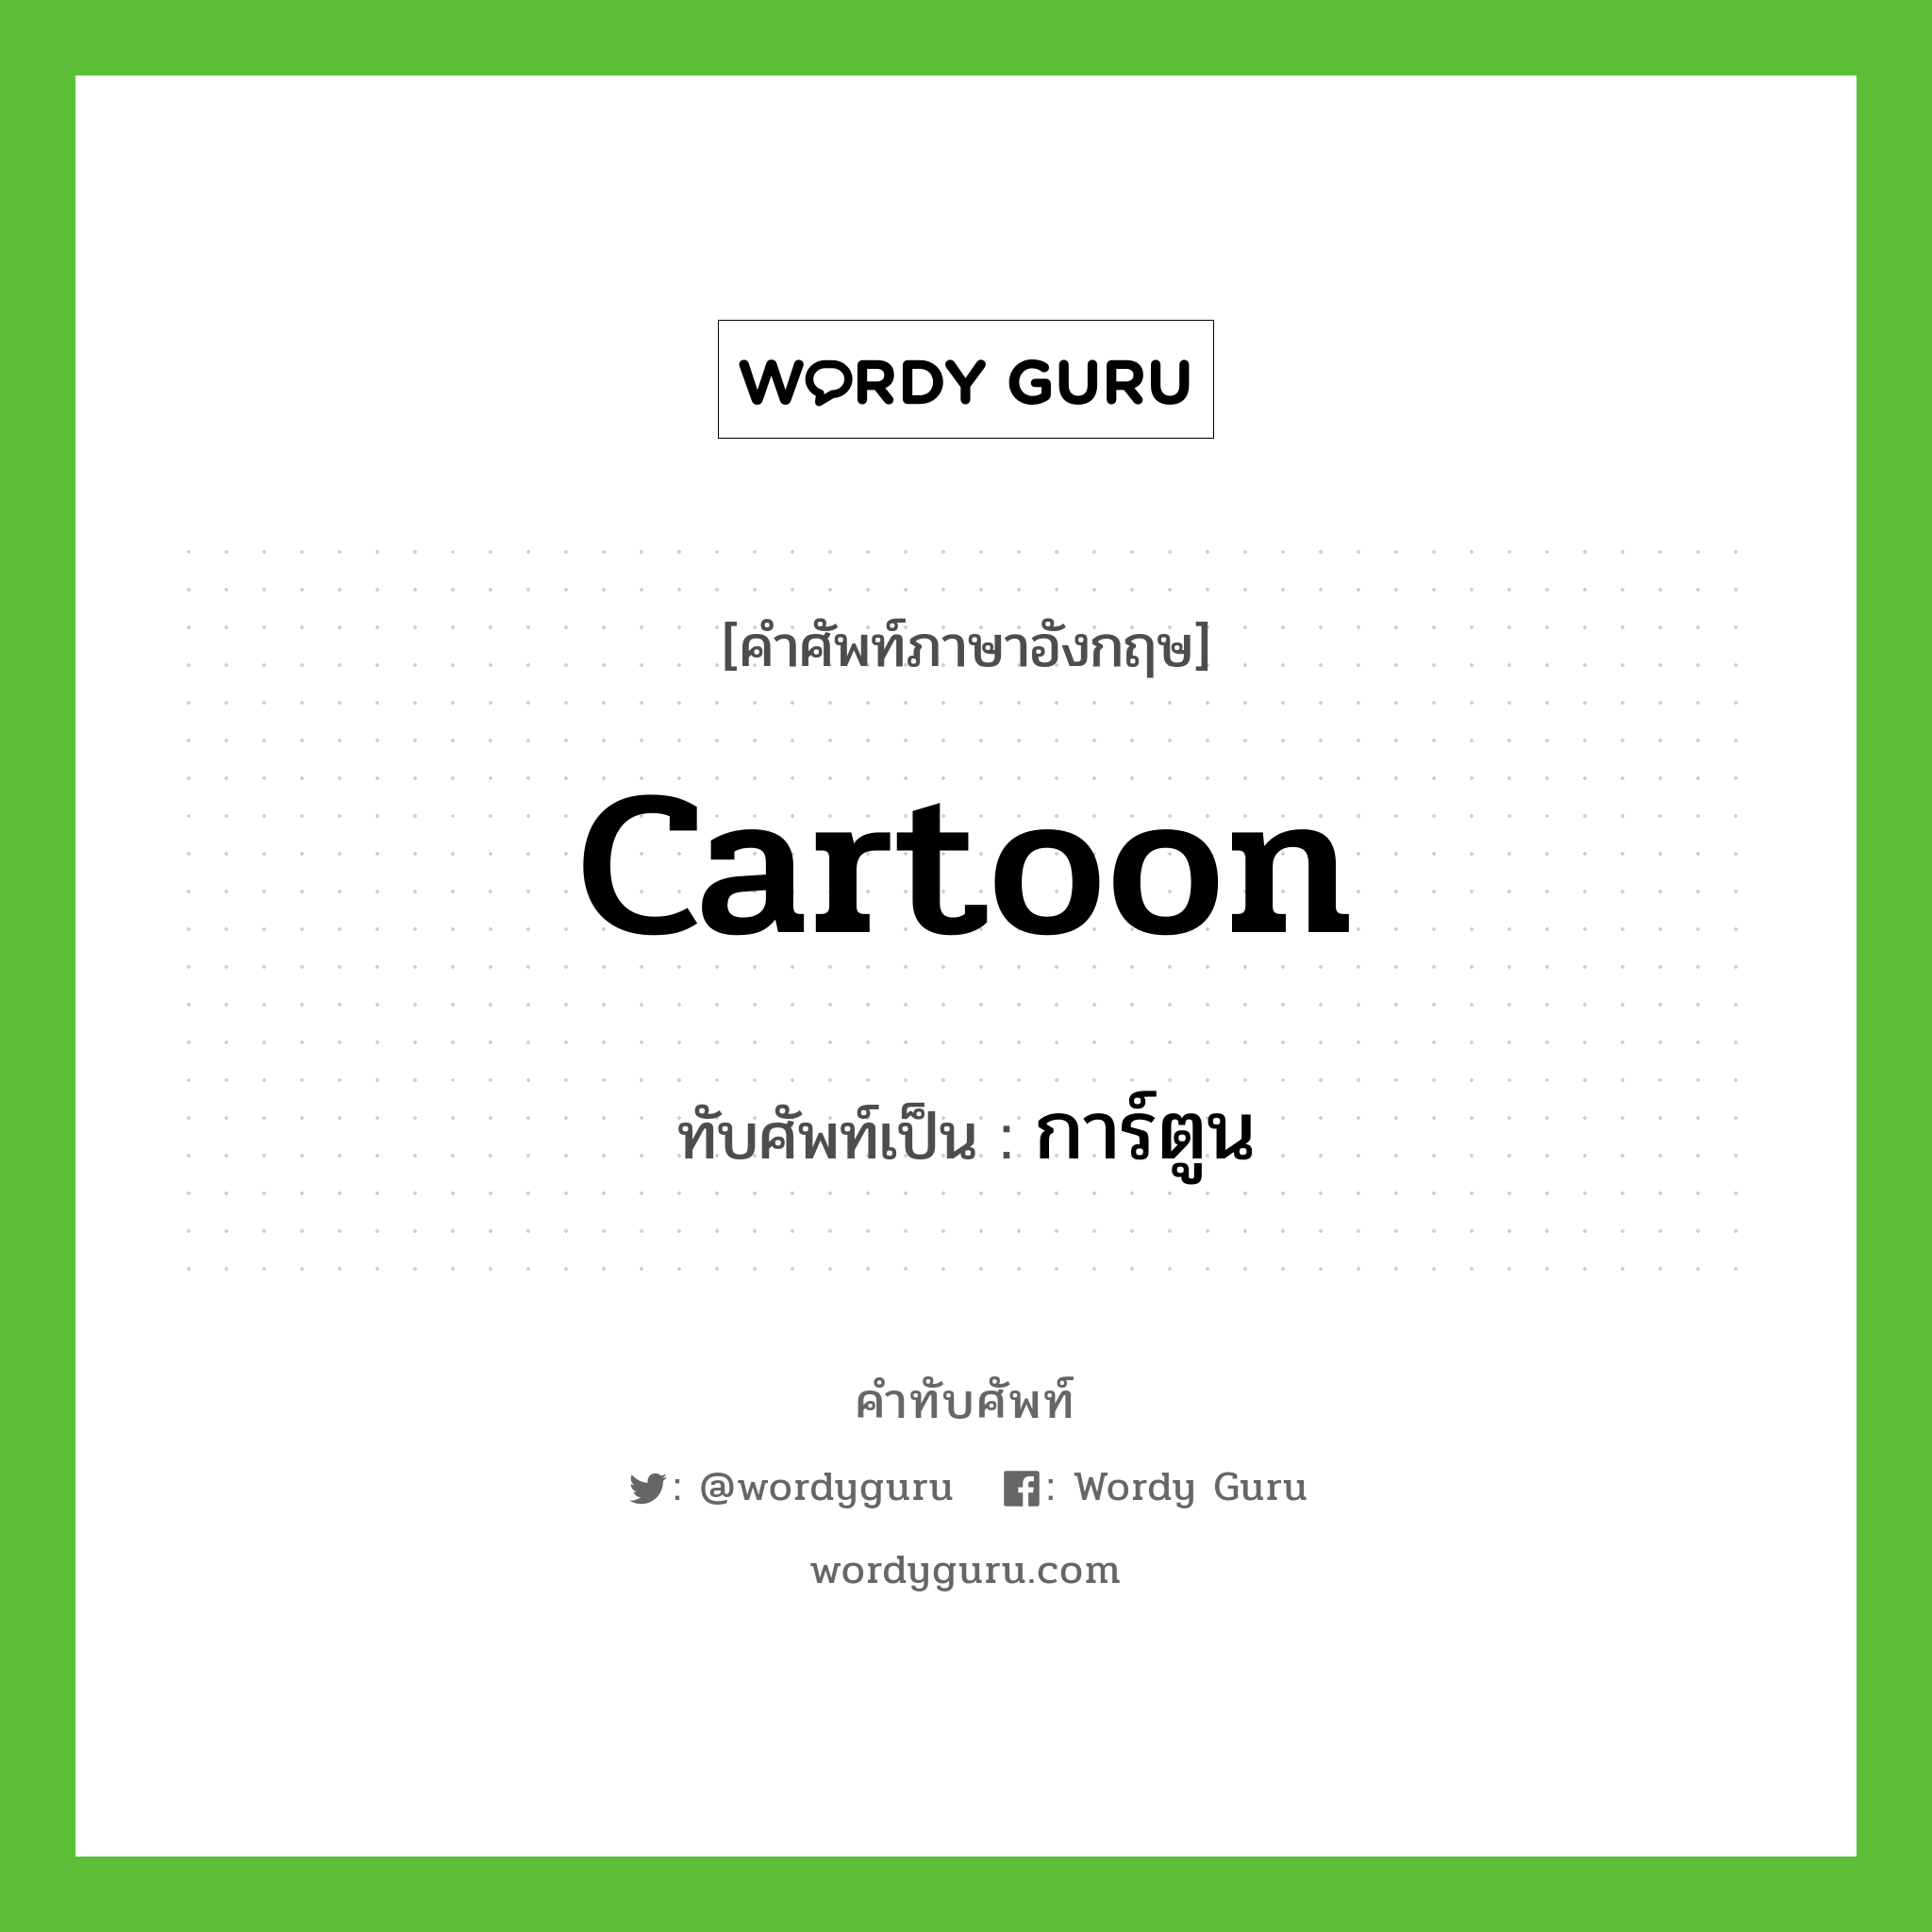 cartoon เขียนเป็นคำไทยว่าอะไร?, คำศัพท์ภาษาอังกฤษ cartoon ทับศัพท์เป็น การ์ตูน